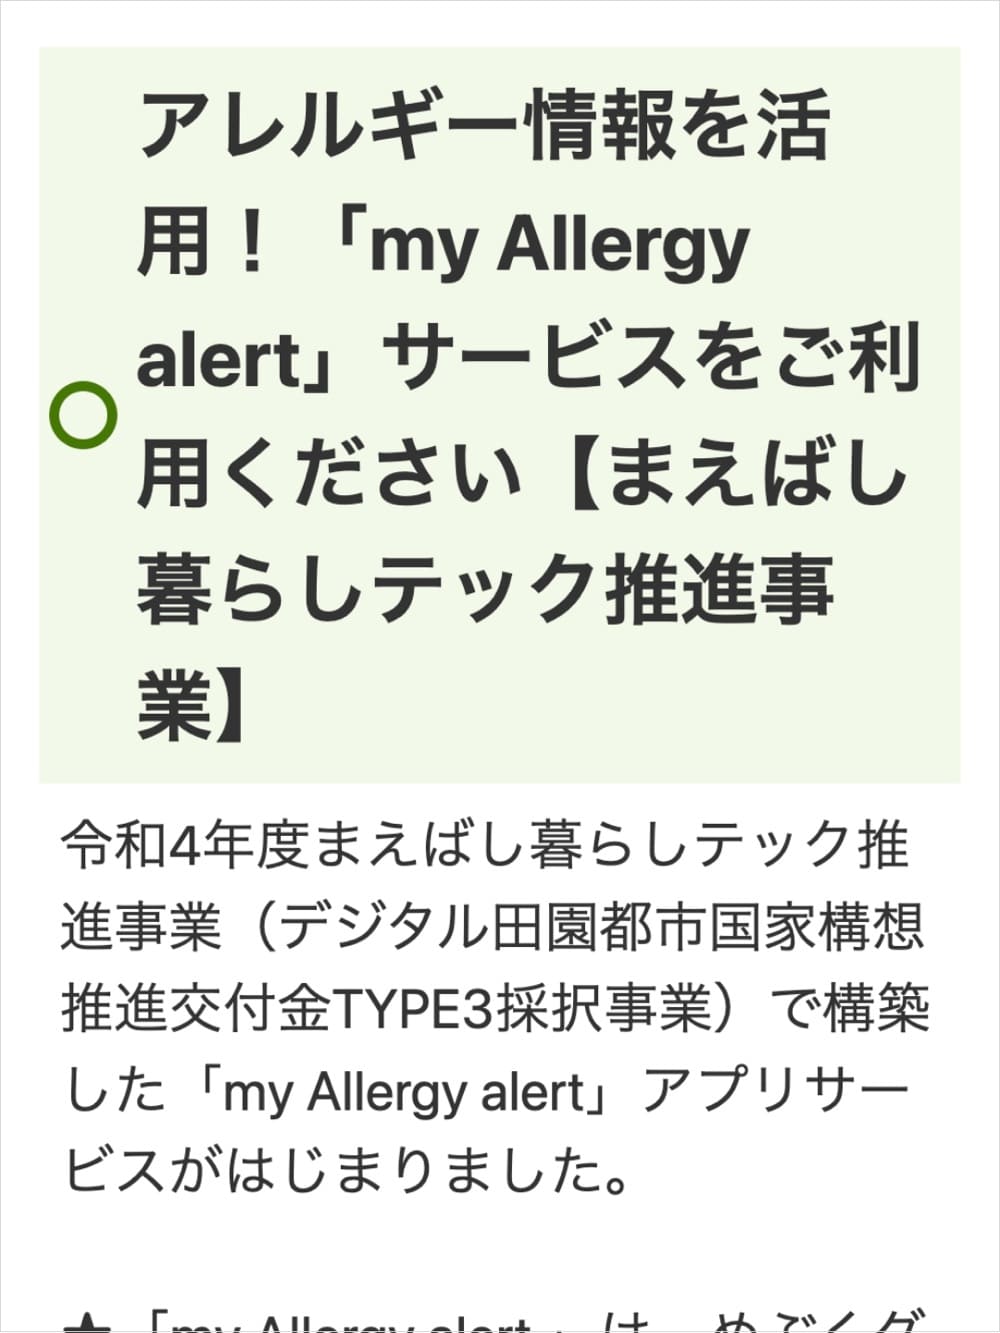 アレルギー情報を活用！「my Allergy alert」サービスをご利用ください【まえばし暮らしテック推進事業】 | 前橋市| アレルギー対応パンのtonton